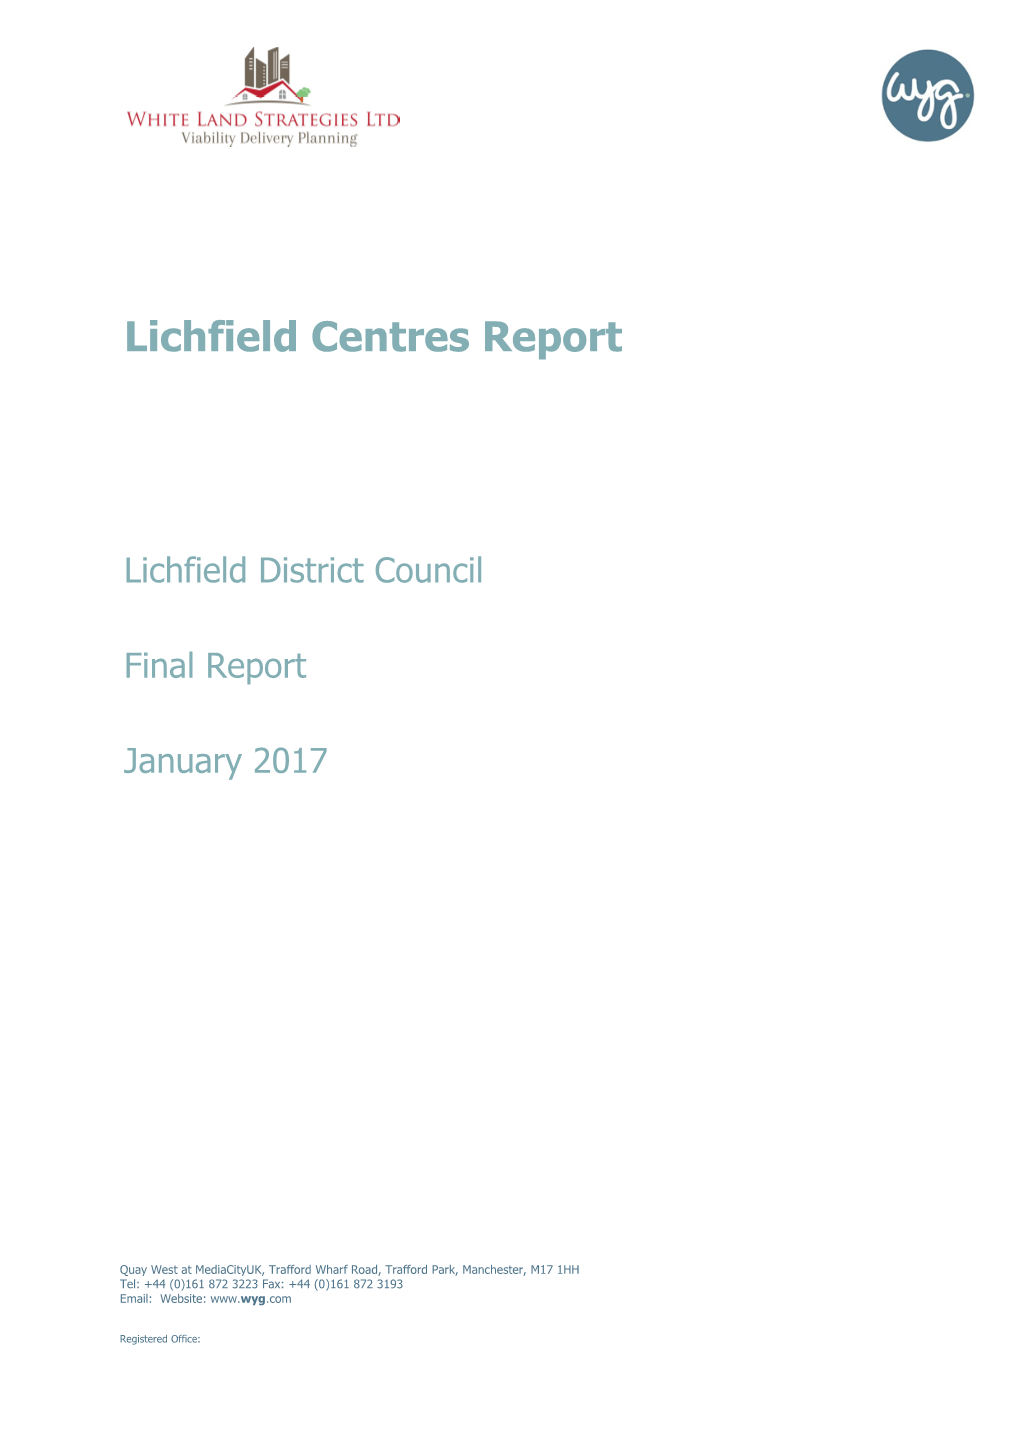 Lichfield Centres Report 2017